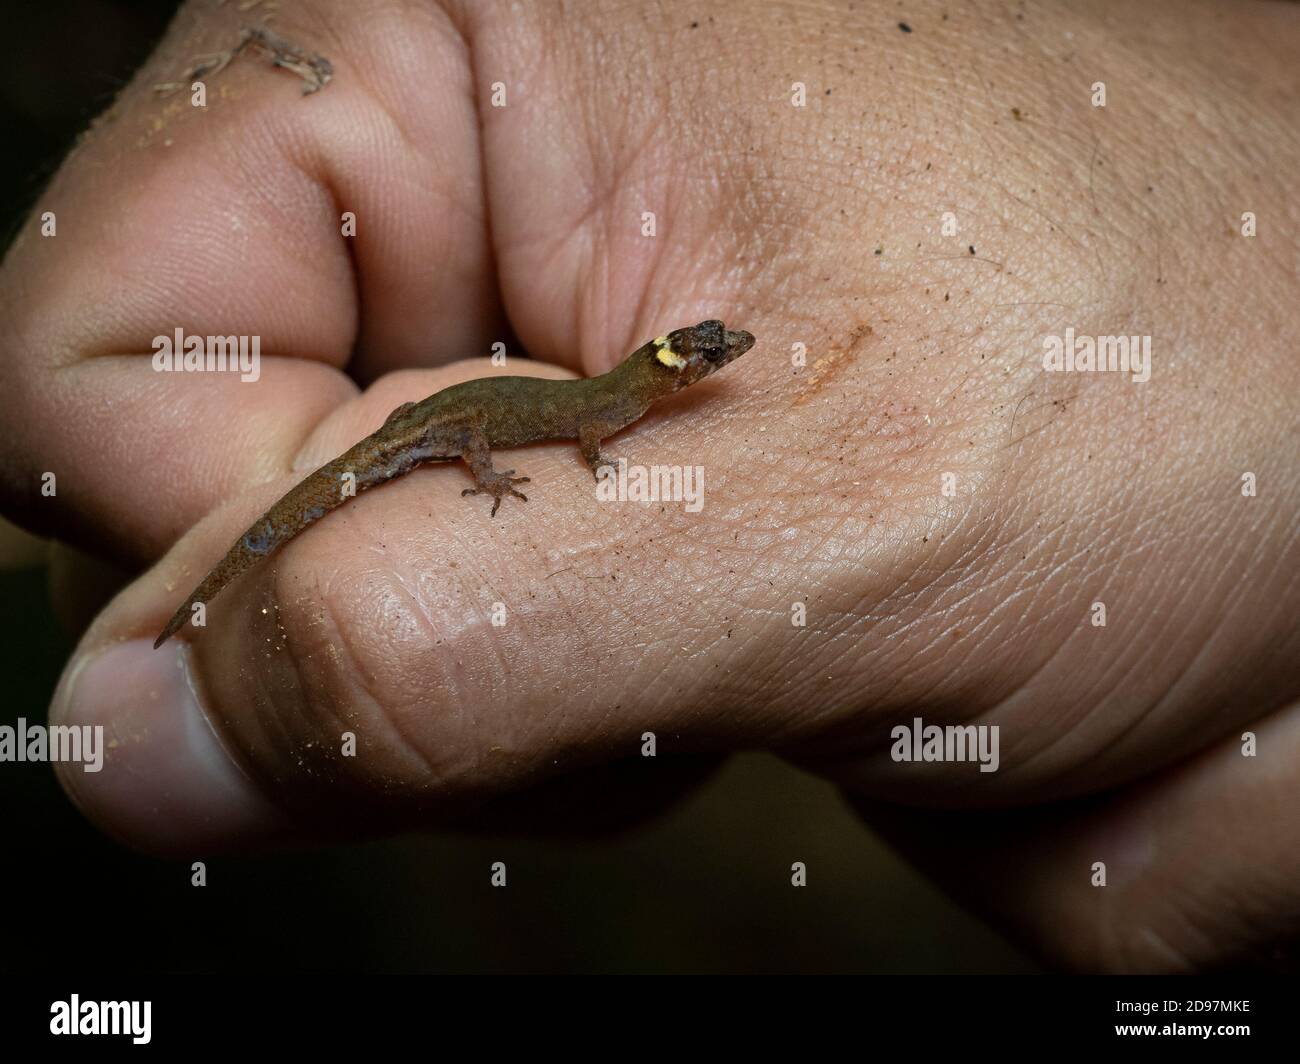 Enano gecko (Lepidoblepharis emberawoundule), varón adulto en la mano del Dr. Abel Batista, quien lo describió a la Ciencia en 2014. Guna Yala, Panamá, Febrero Foto de stock